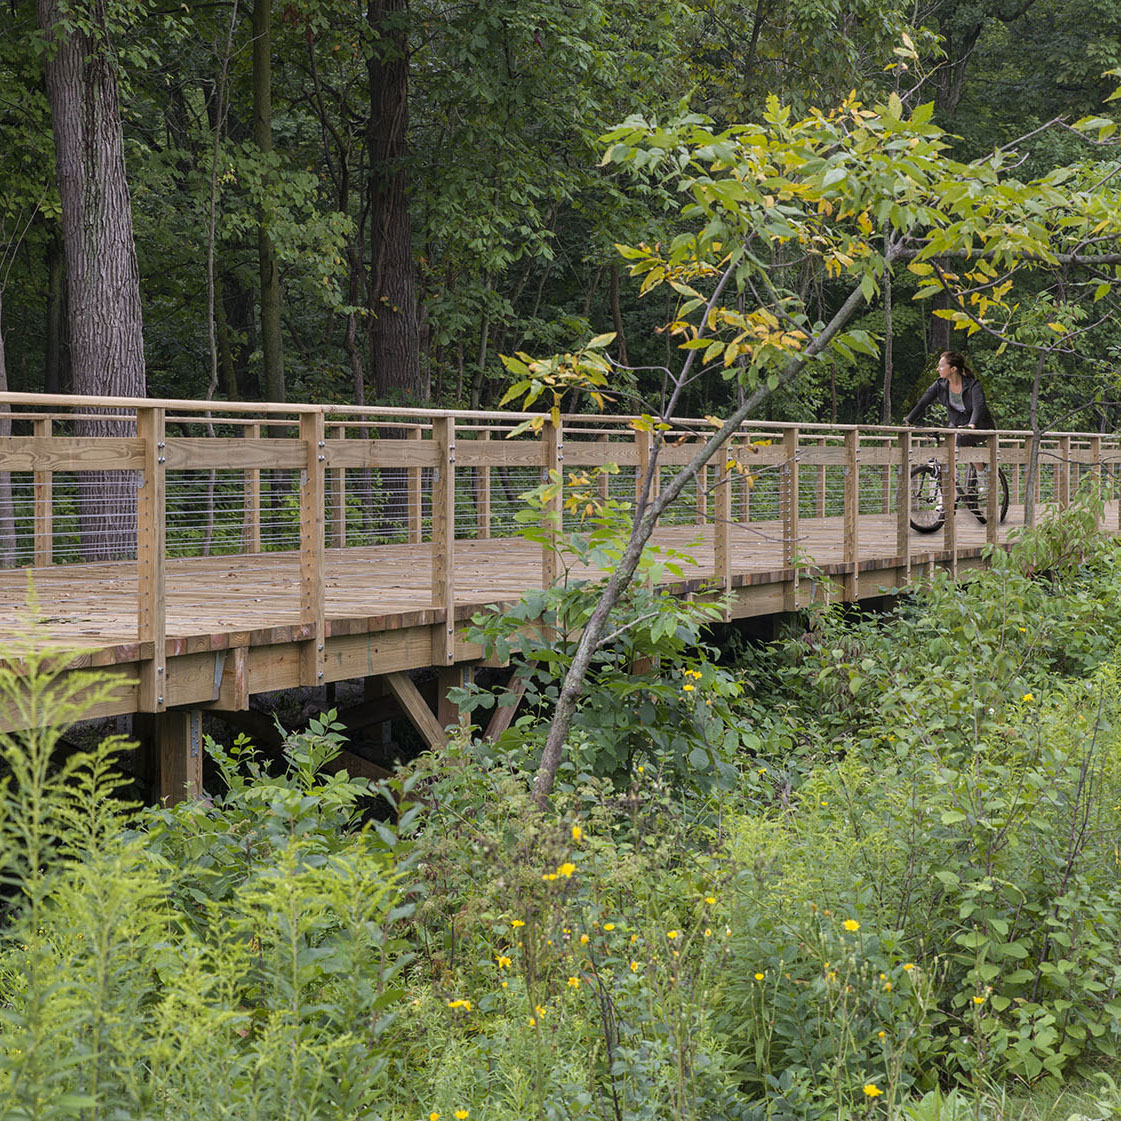 PHOTO: Woman riding bike across a bridge section of the bike path.